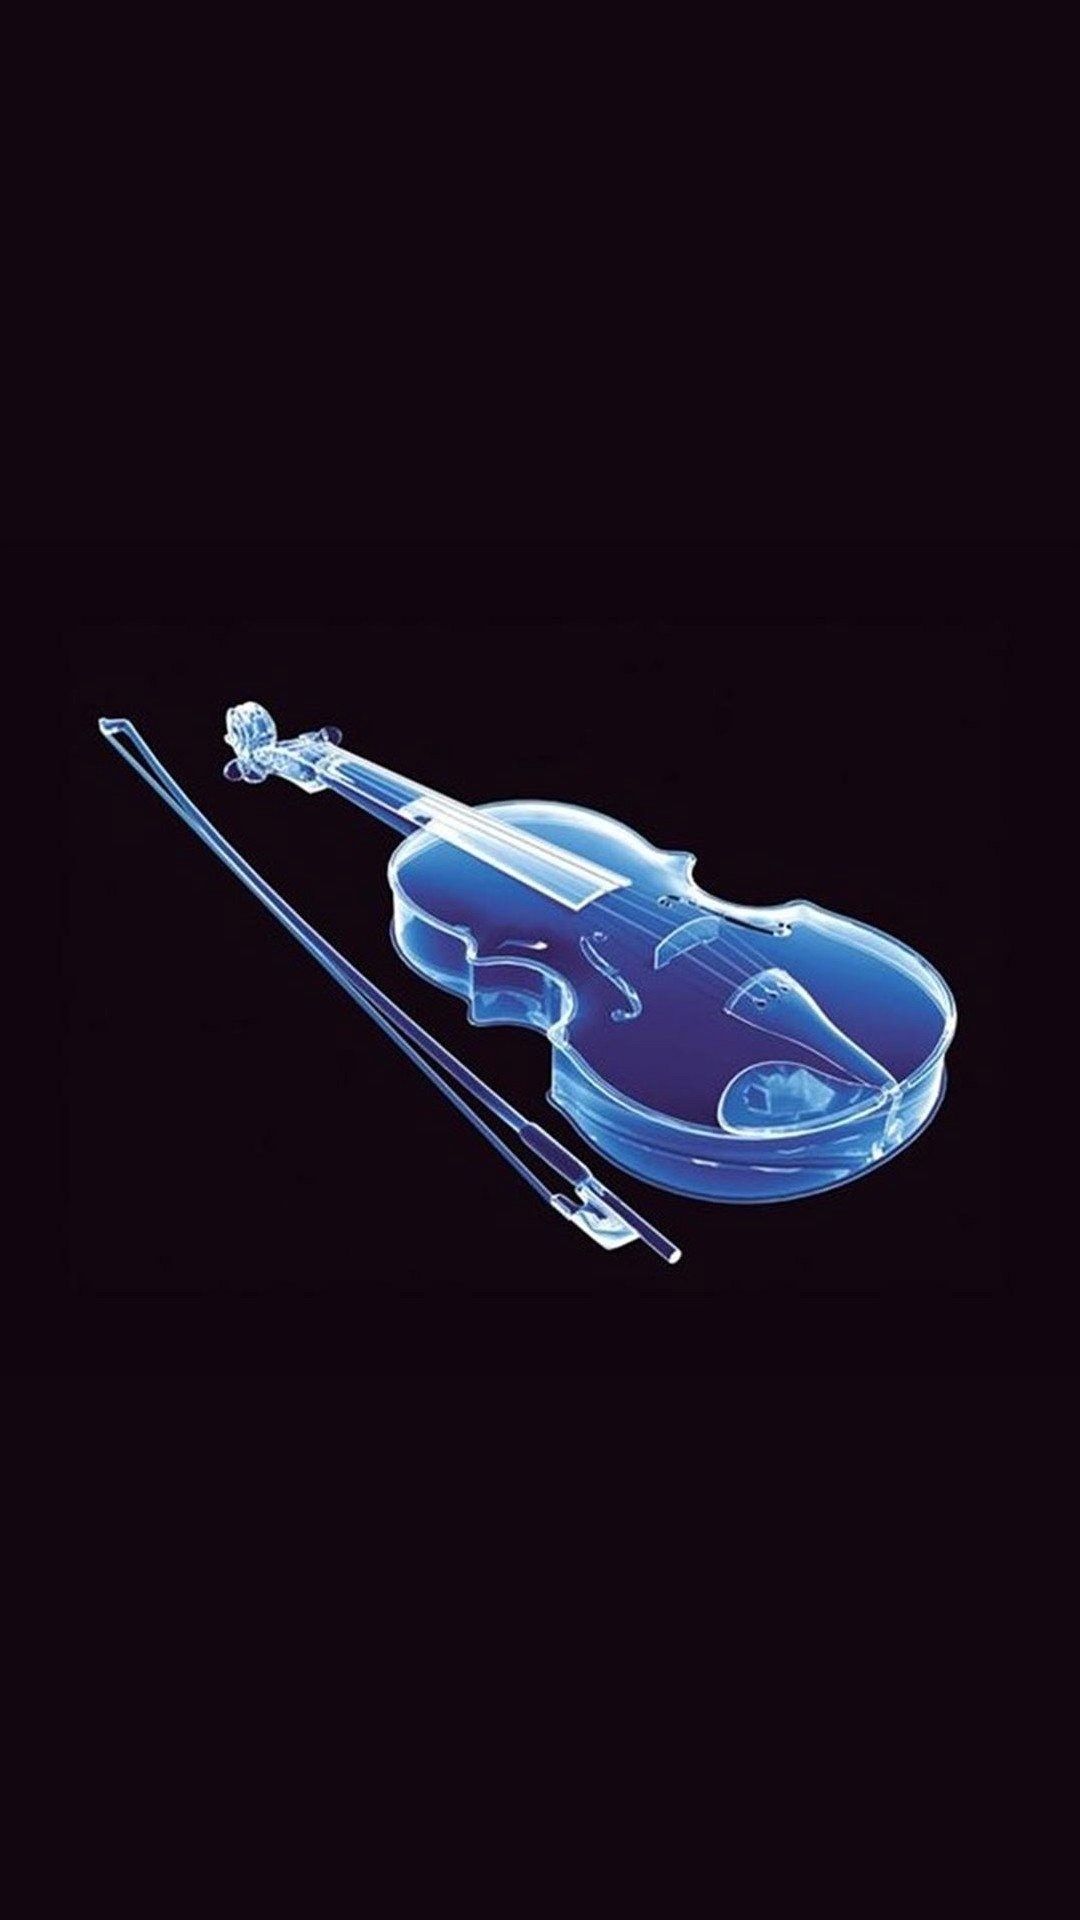 1080x1920 Wallpaper full hd 1080 x 1920 smartphone violin blue